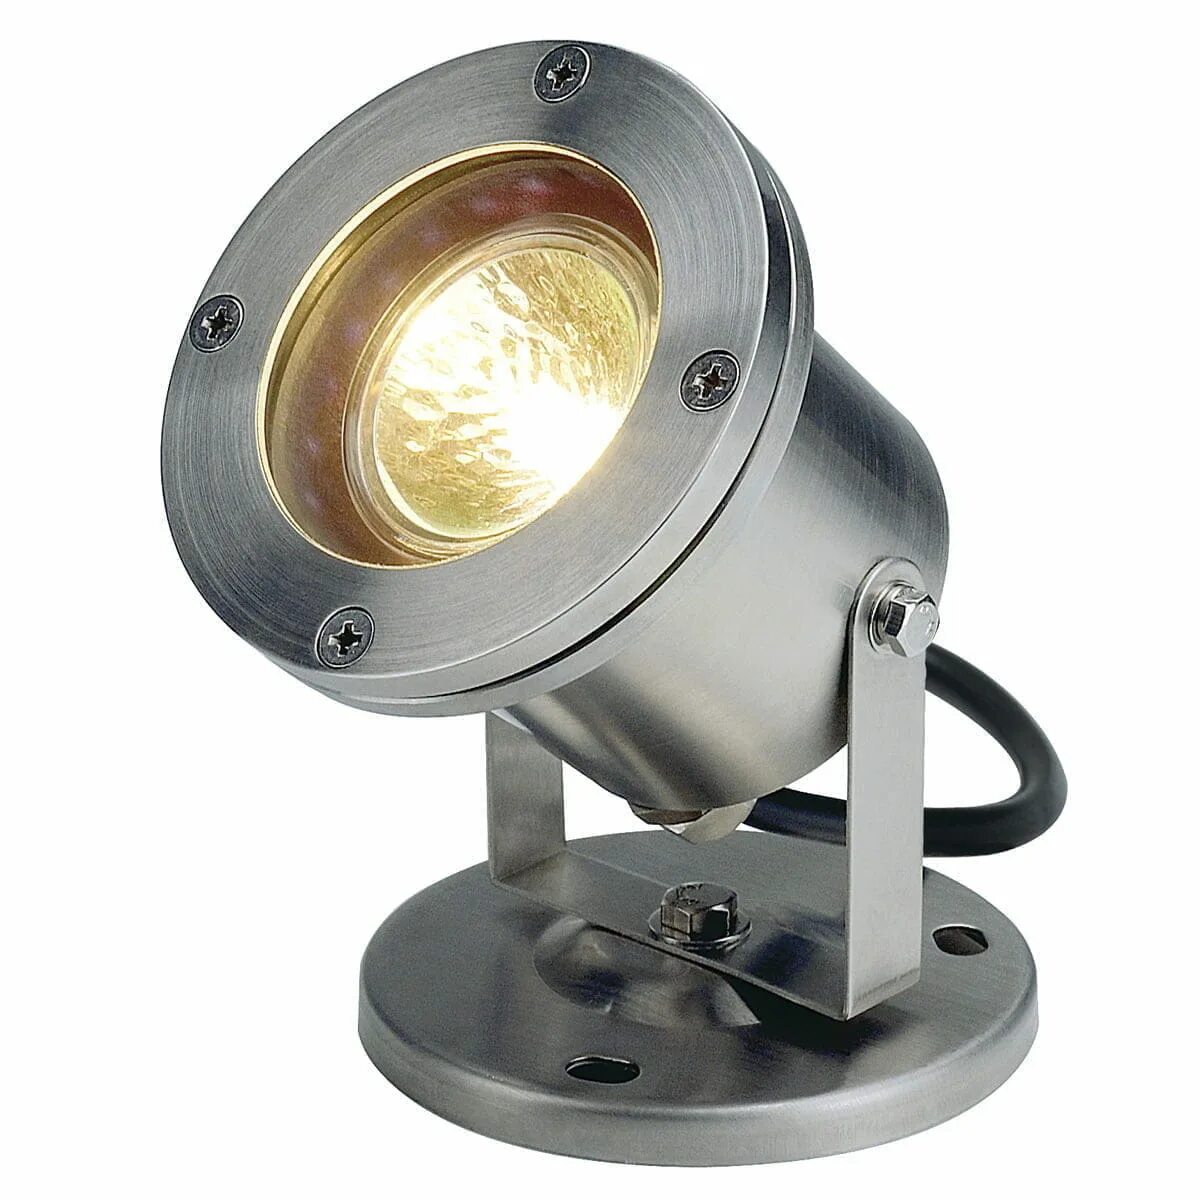 Прожектор галогенный SLV Nautilus 35w 229090. Прожектор SLV Nautilus 1001965. Прожектор SLV 1001633. Прожектор SLV 1001635. Купить лампу прожектор